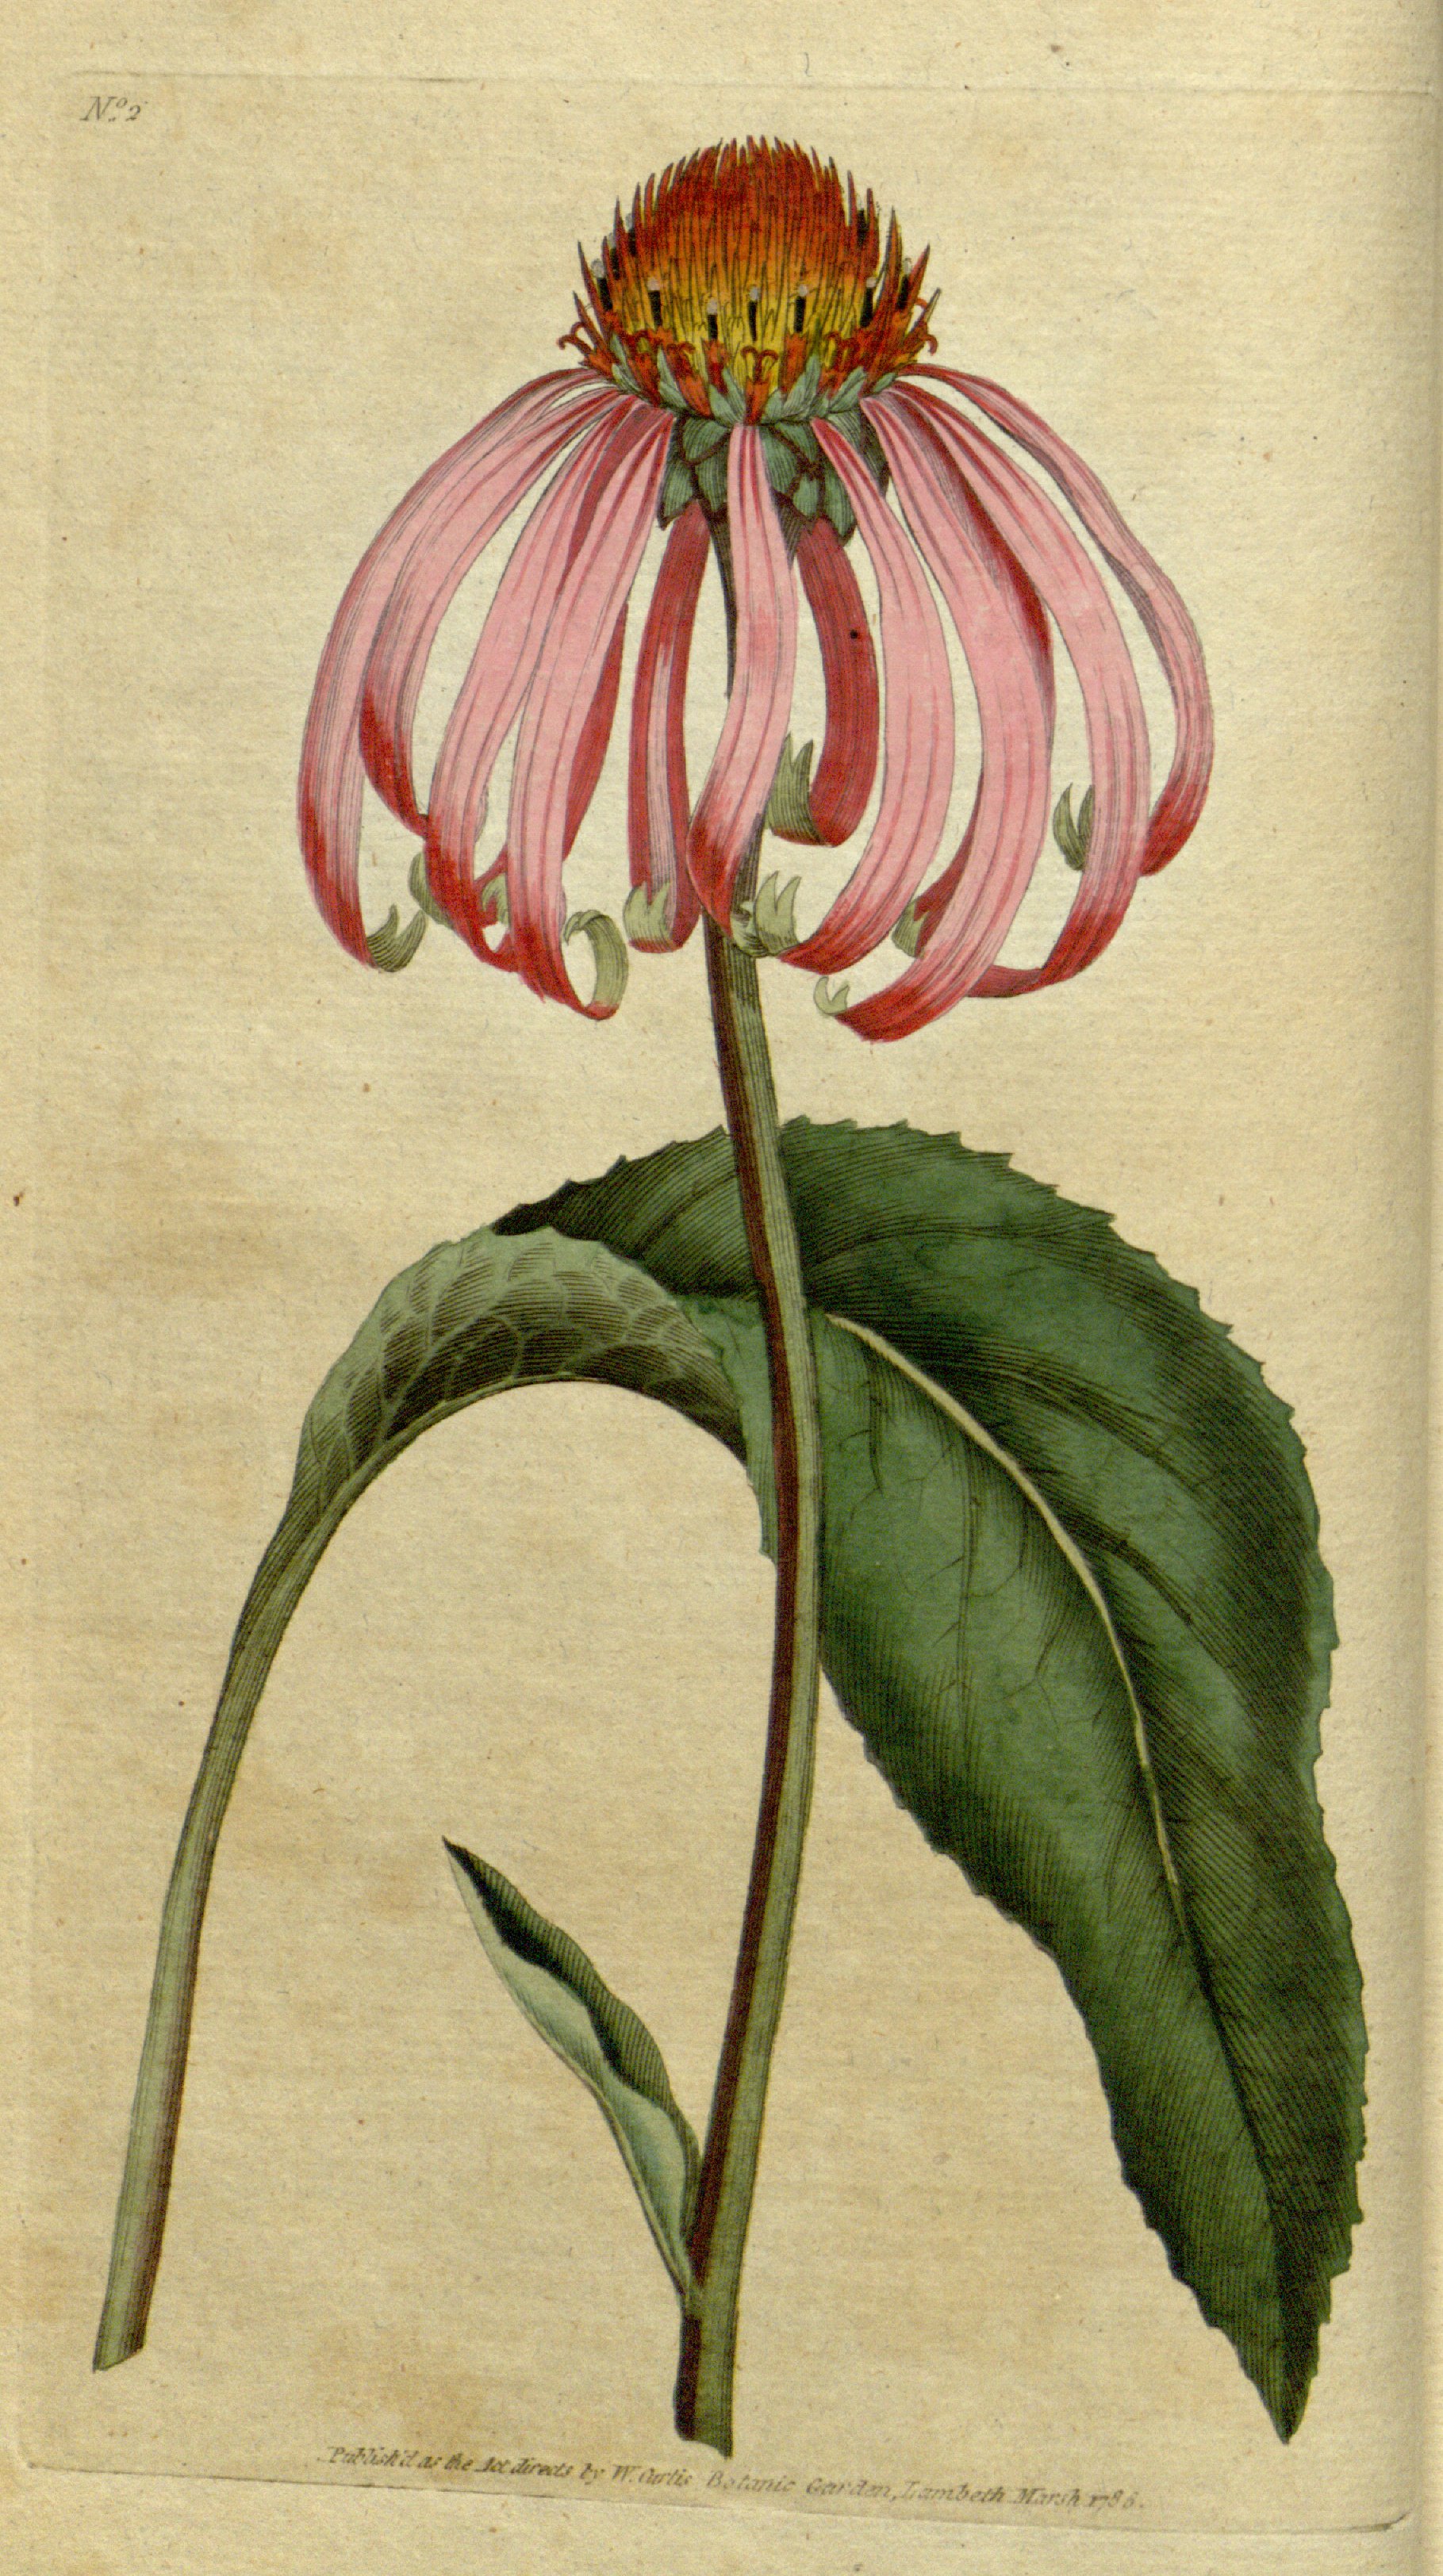 Illustration of Echinacea